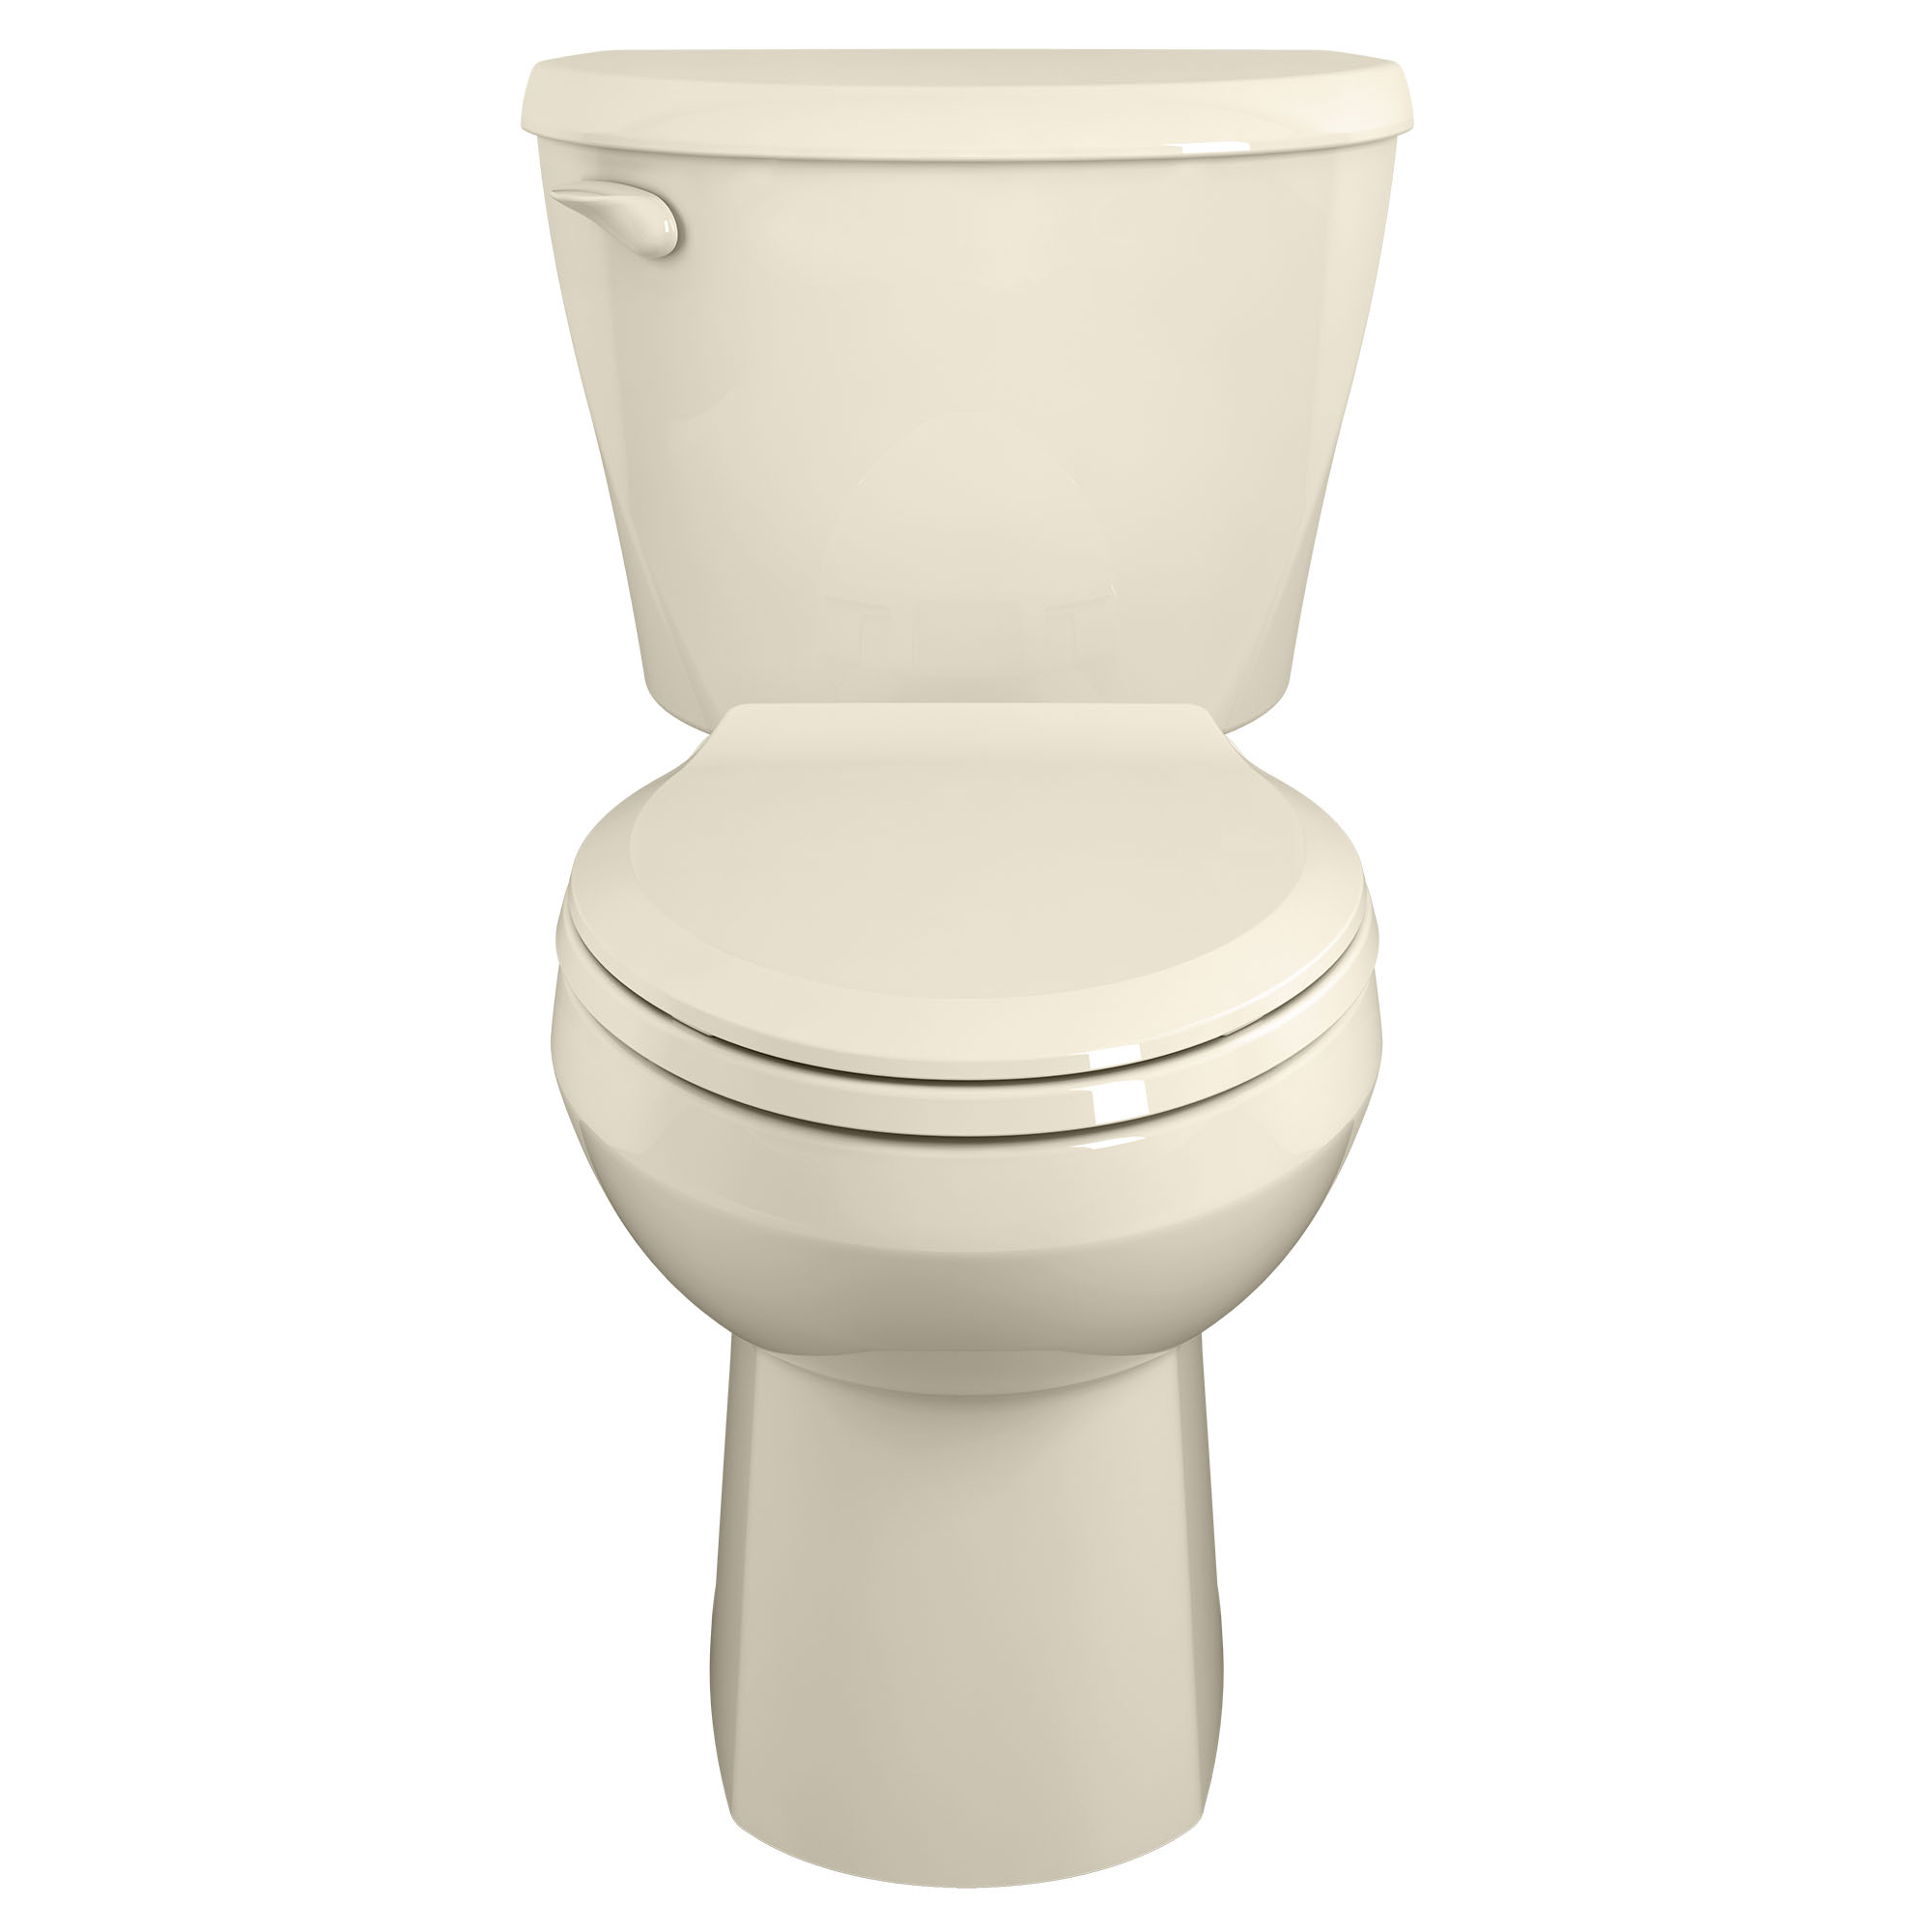 Toilette Colony, 2 pièces, 1,6 gpc/6,0 lpc, à cuvette allongée à hauteur régulière, sans siège